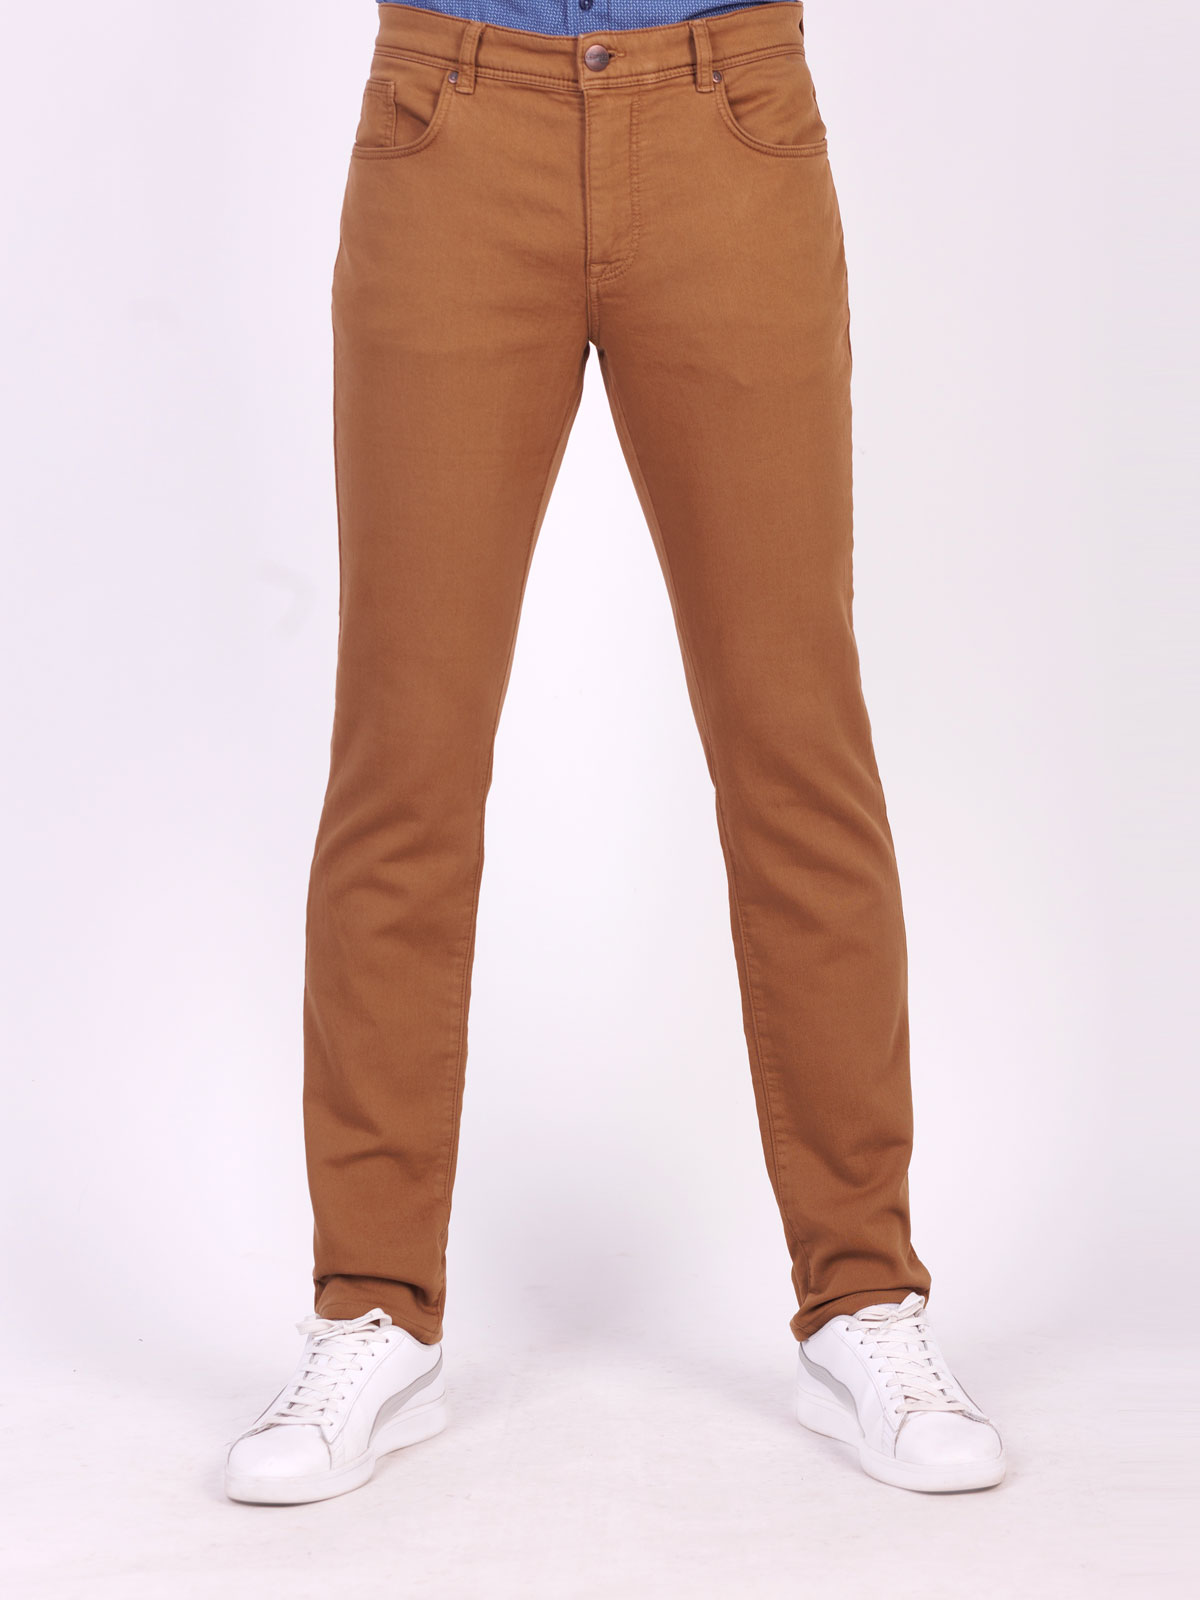 Pantaloni pentru bărbați în cămilă - 60297 € 66.37 img2